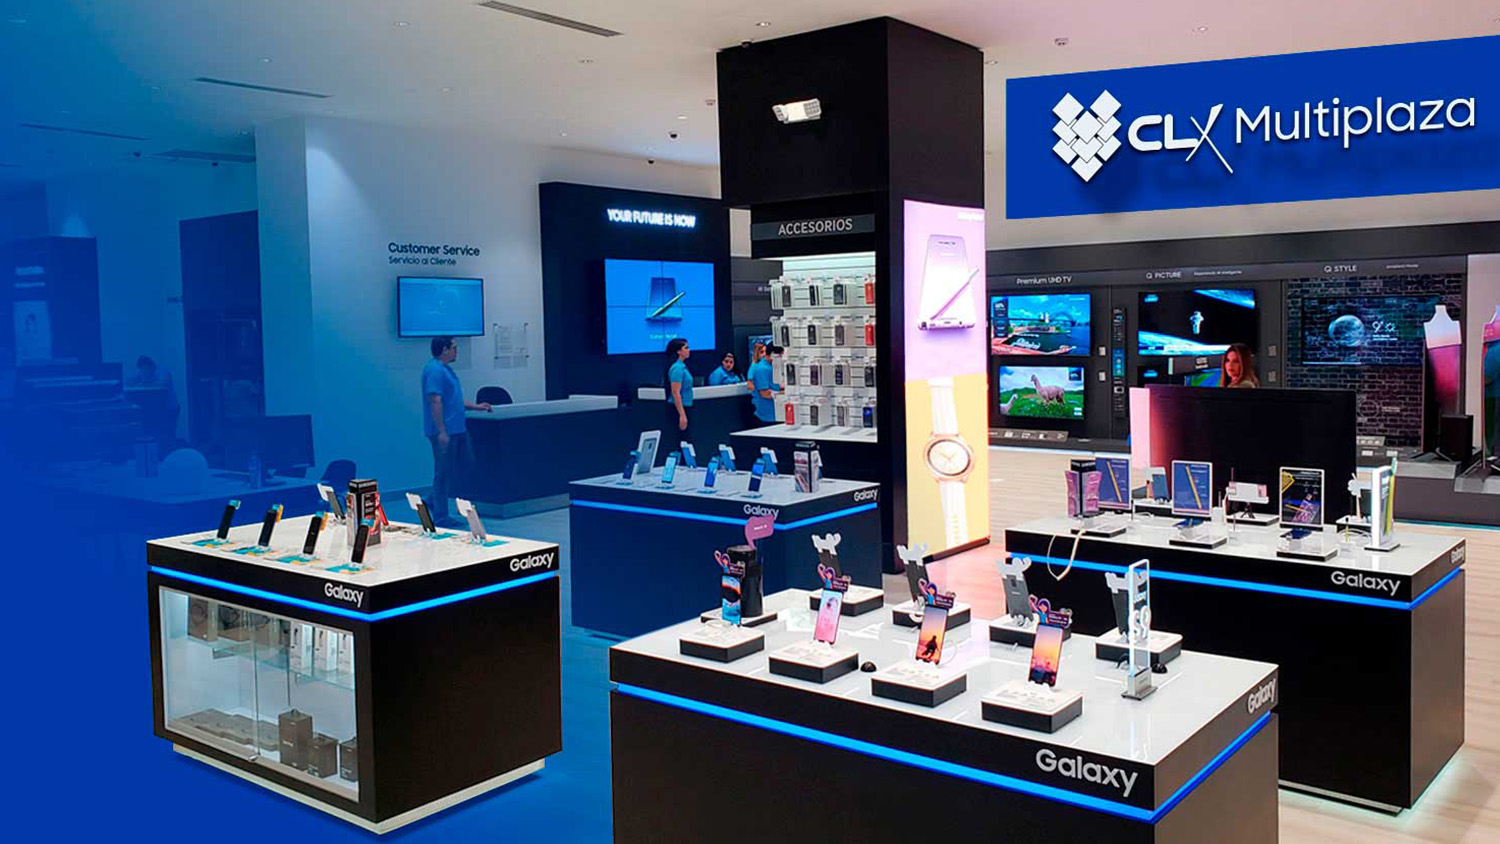 CLX Samsung inauguró su primera tienda en Panamá